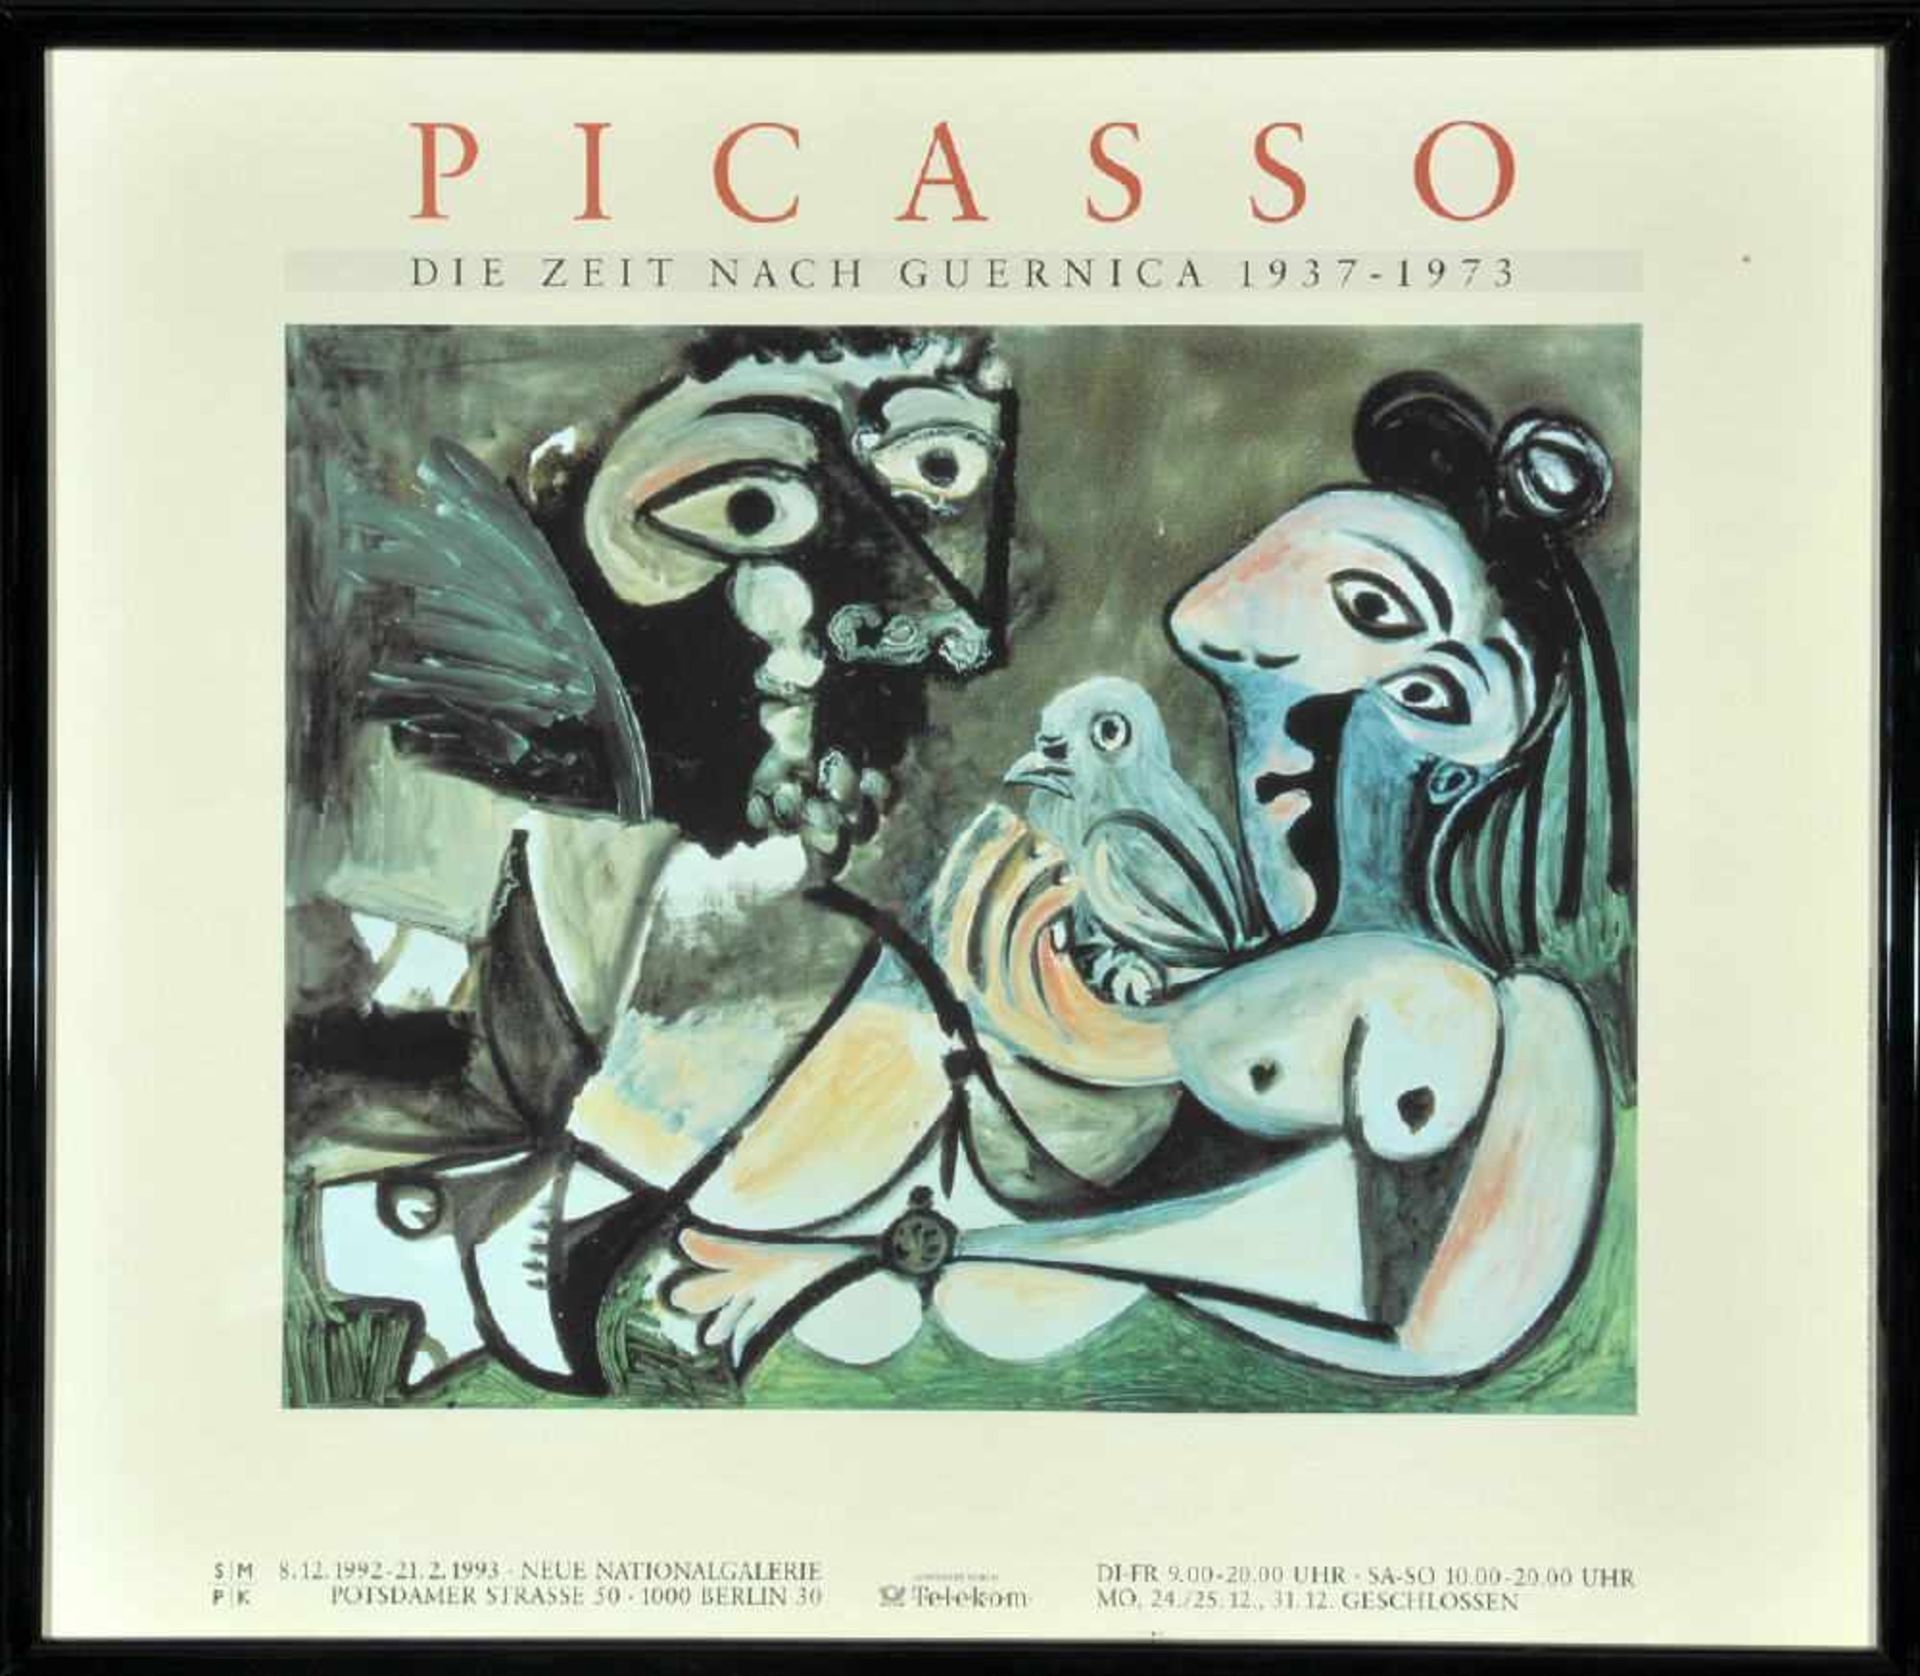 Picasso, Pablo, 1881 Malaga - 1973 MouginsFarboffsetdruck, 59 x 67 cm, " Ausstellungsplakat